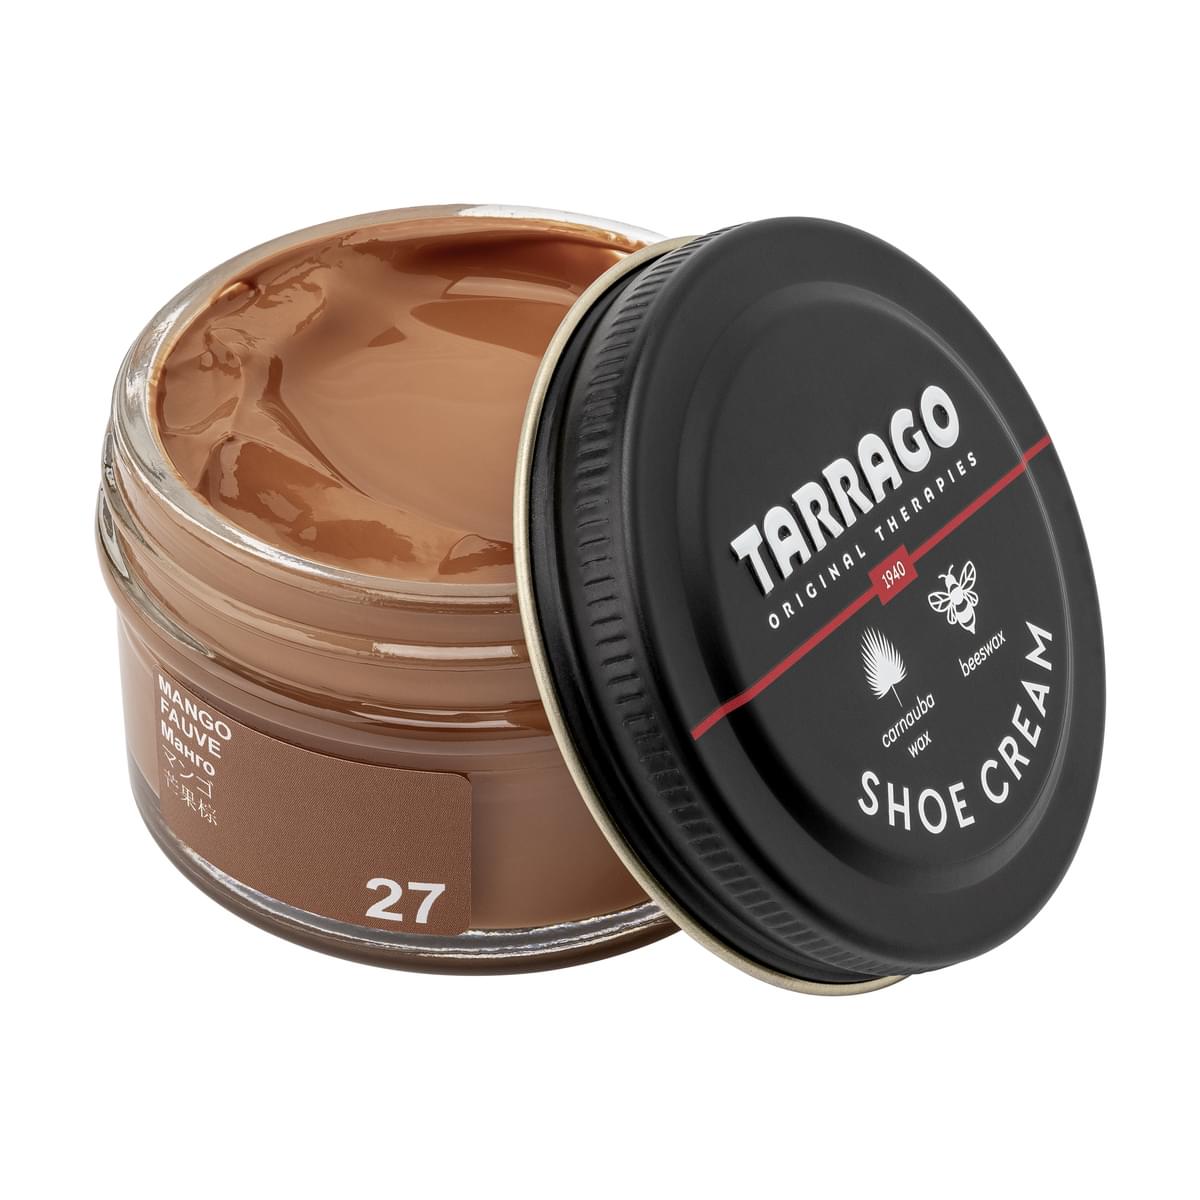 Tarrago Shoe Cream  - Mango - 27